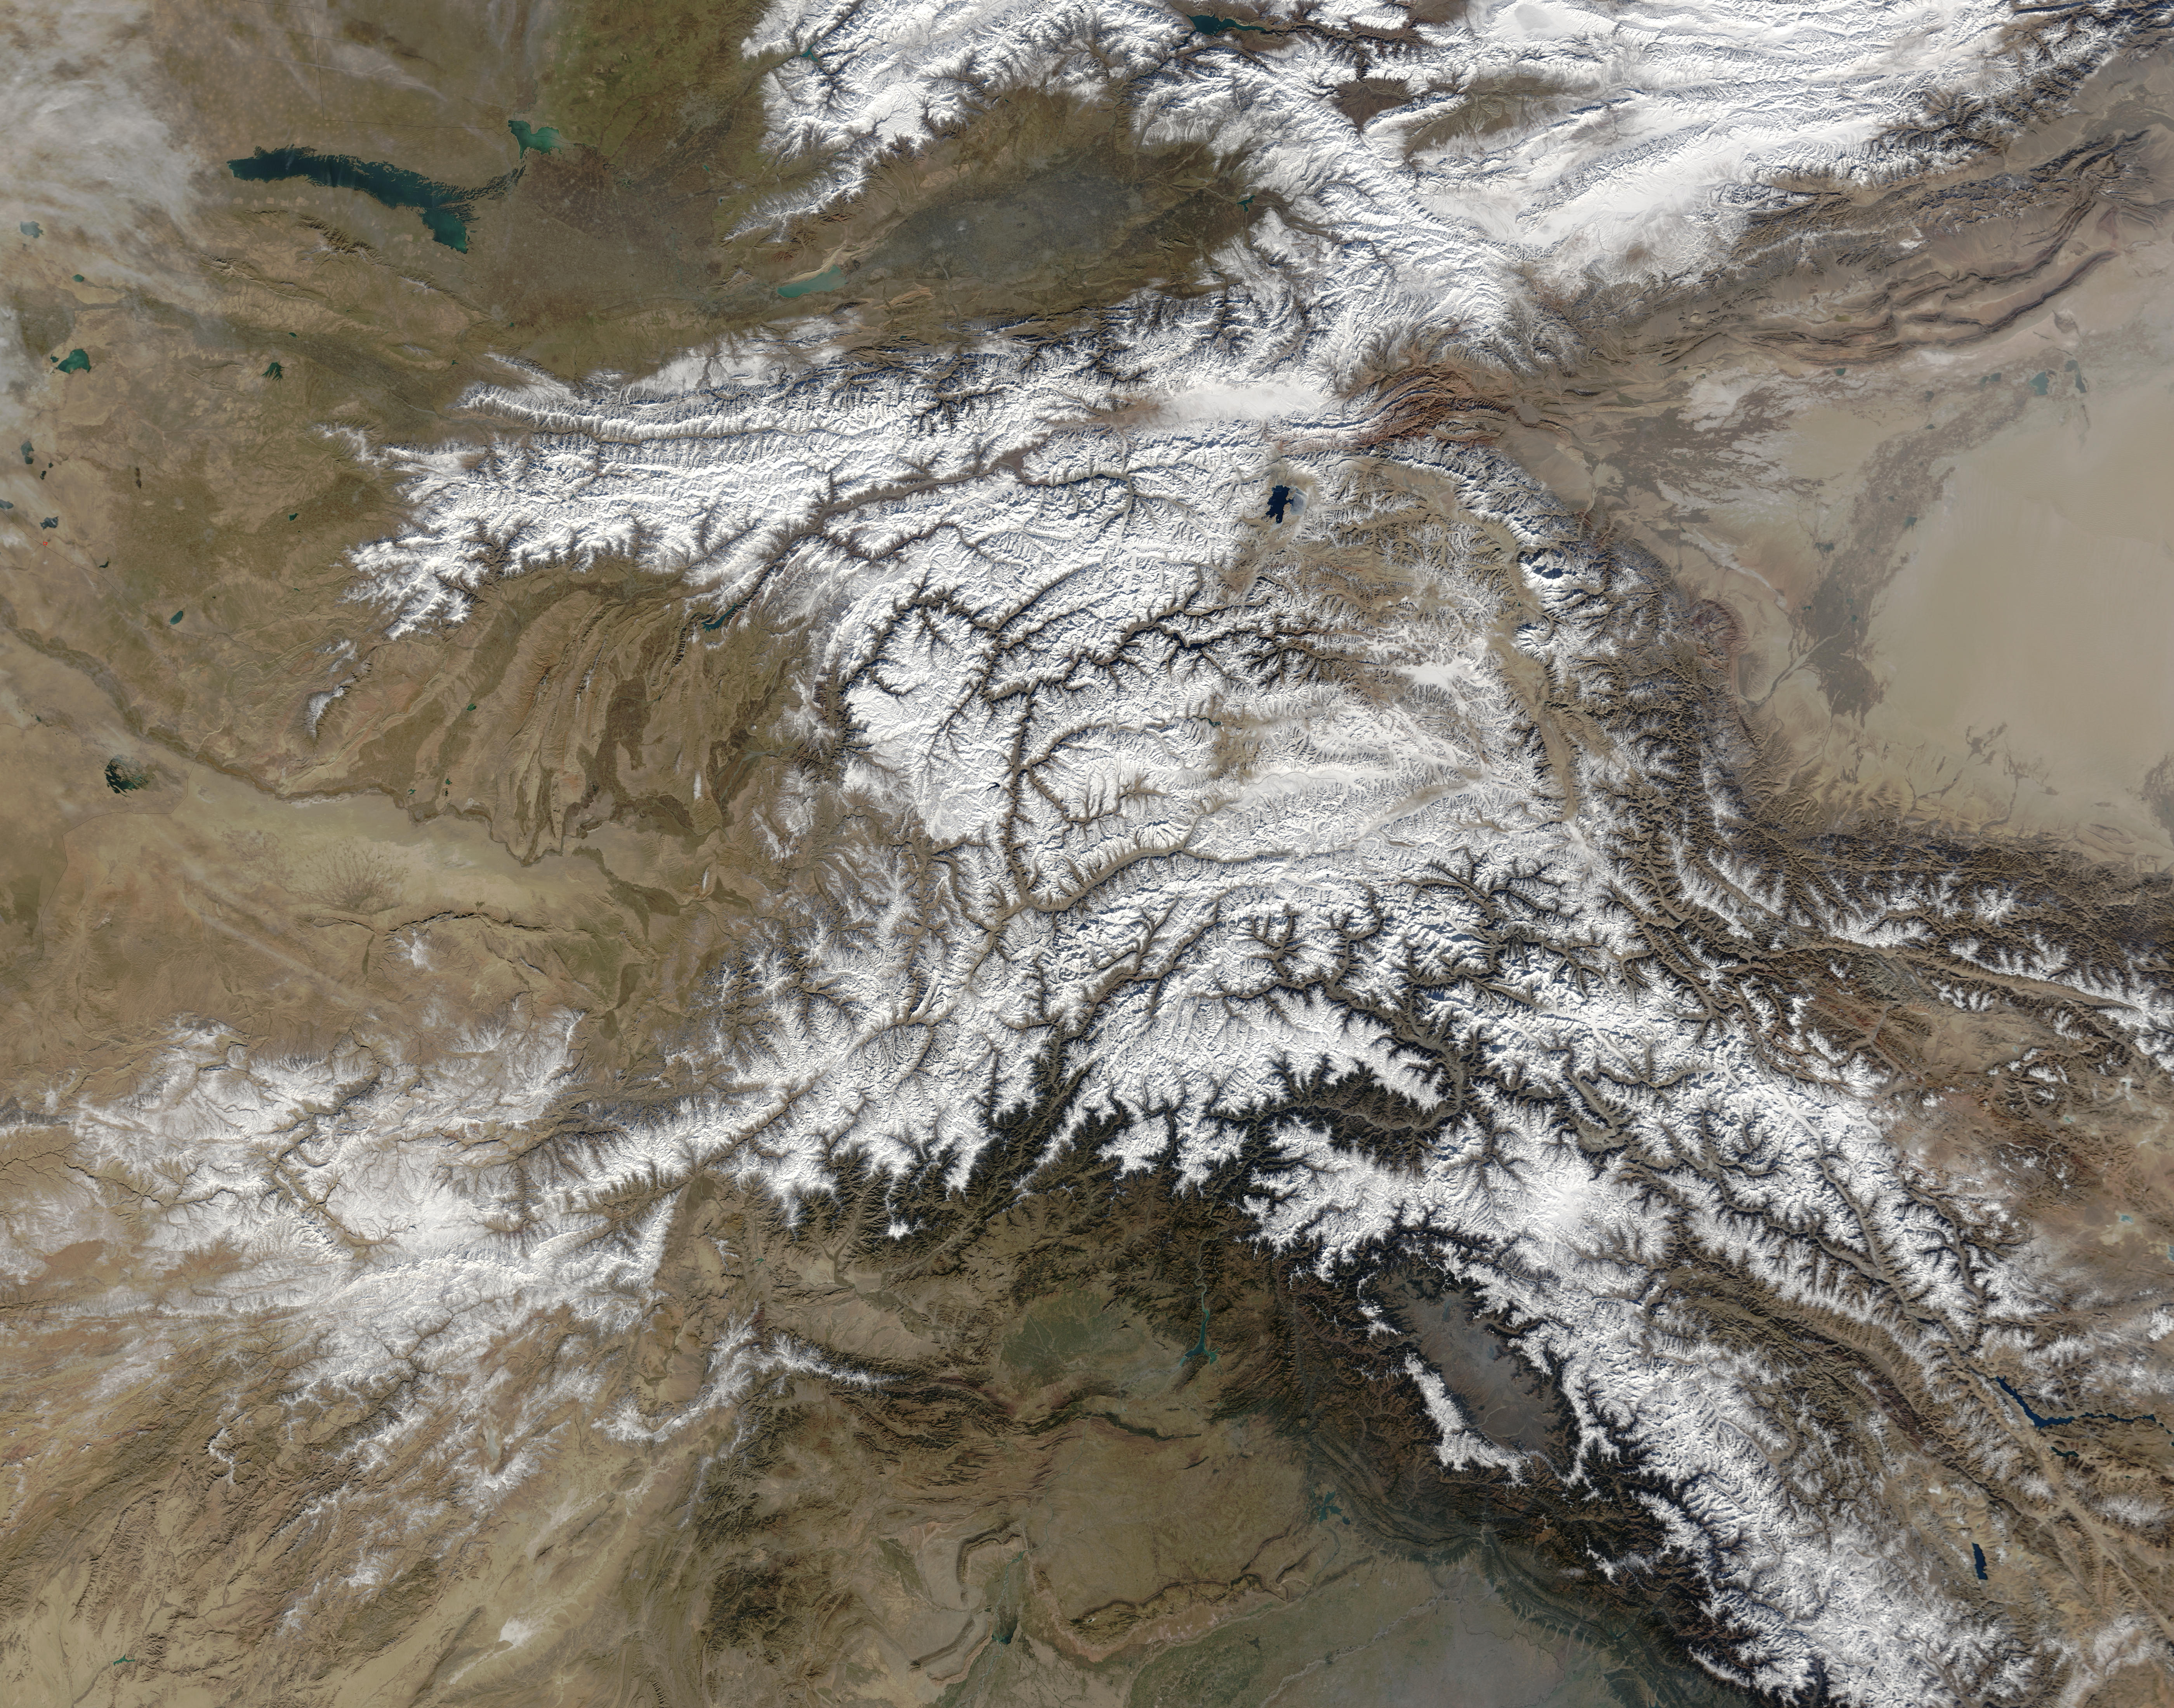 hiindu kush mountains india map